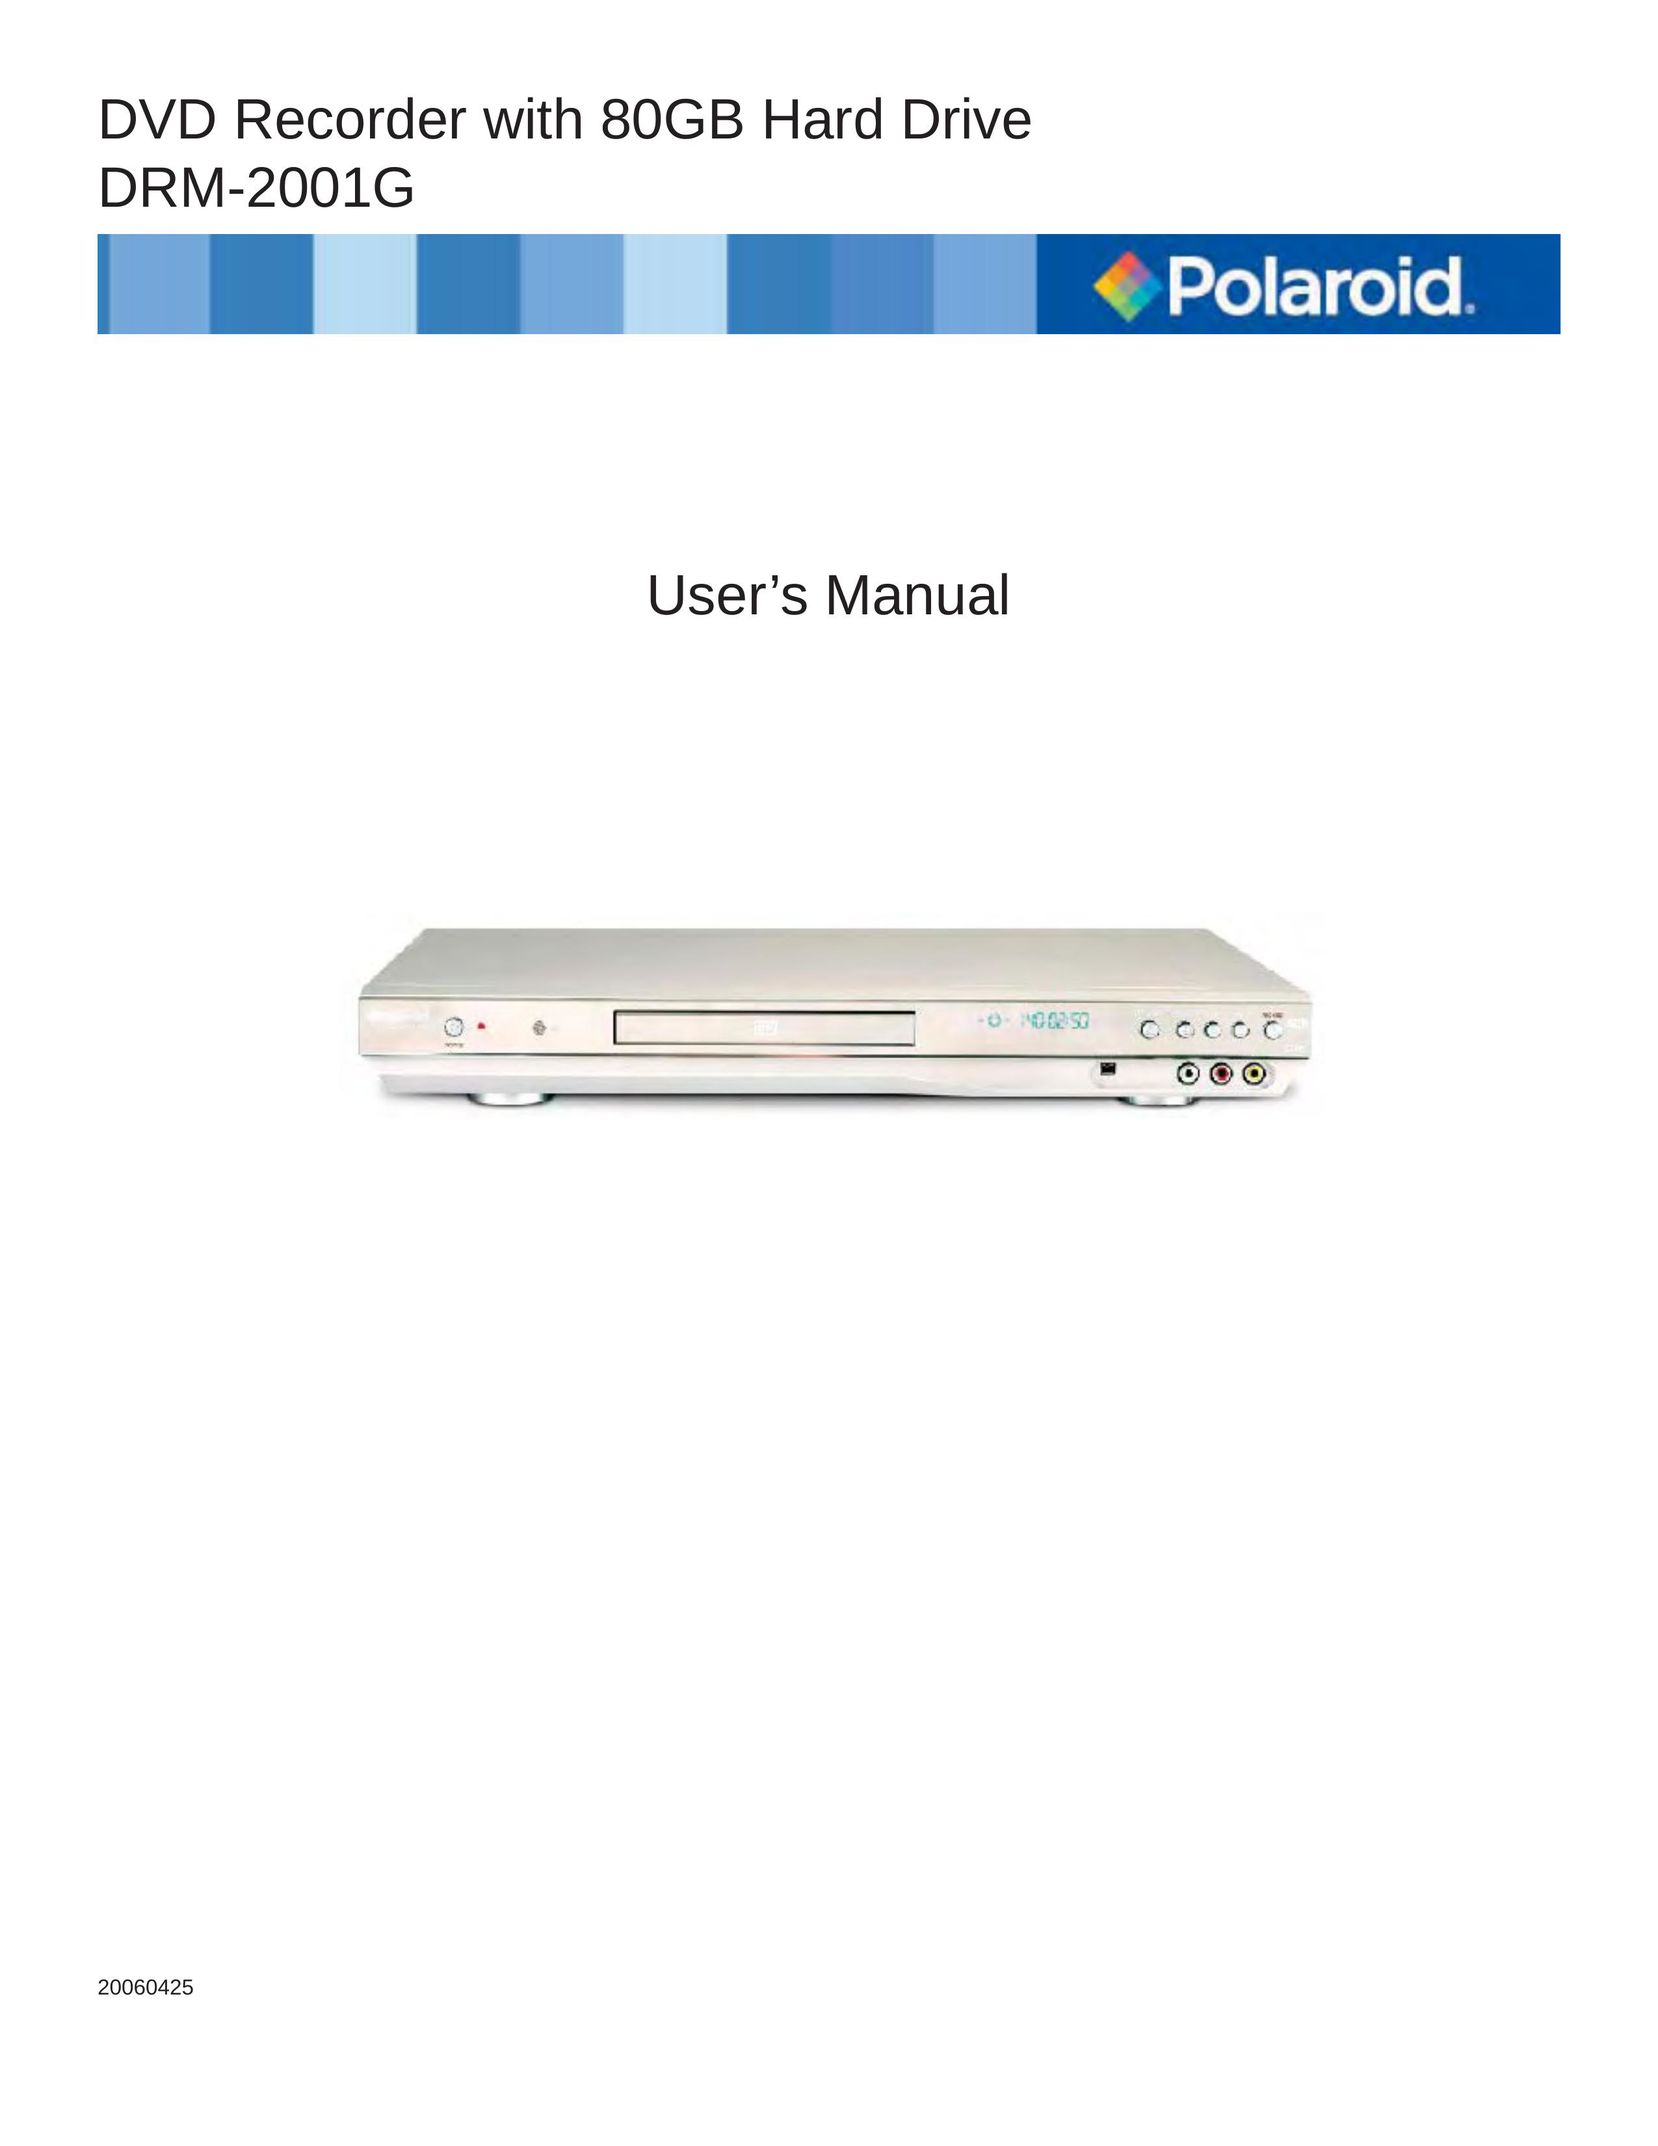 TVGuardian DRM-2001G DVD Player User Manual